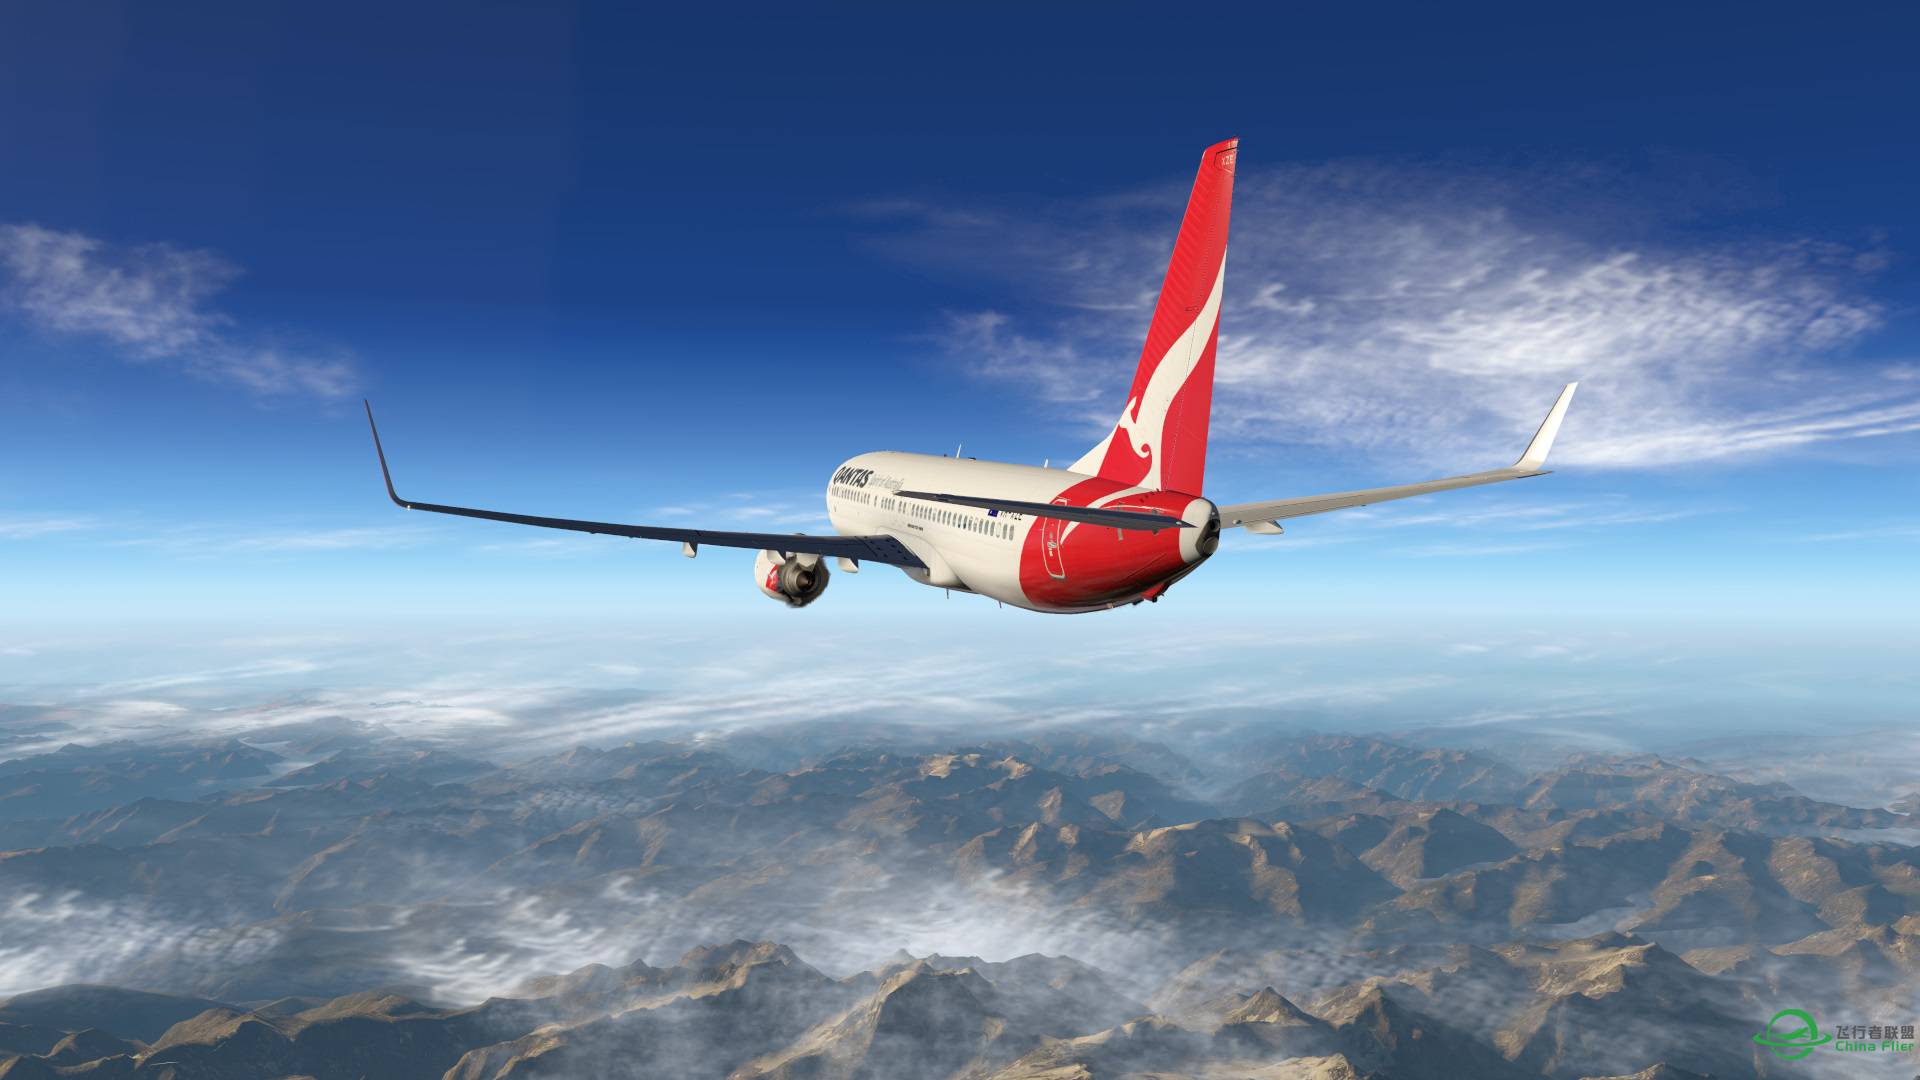 飞跃阿尔卑斯山 X-plane 11-701 